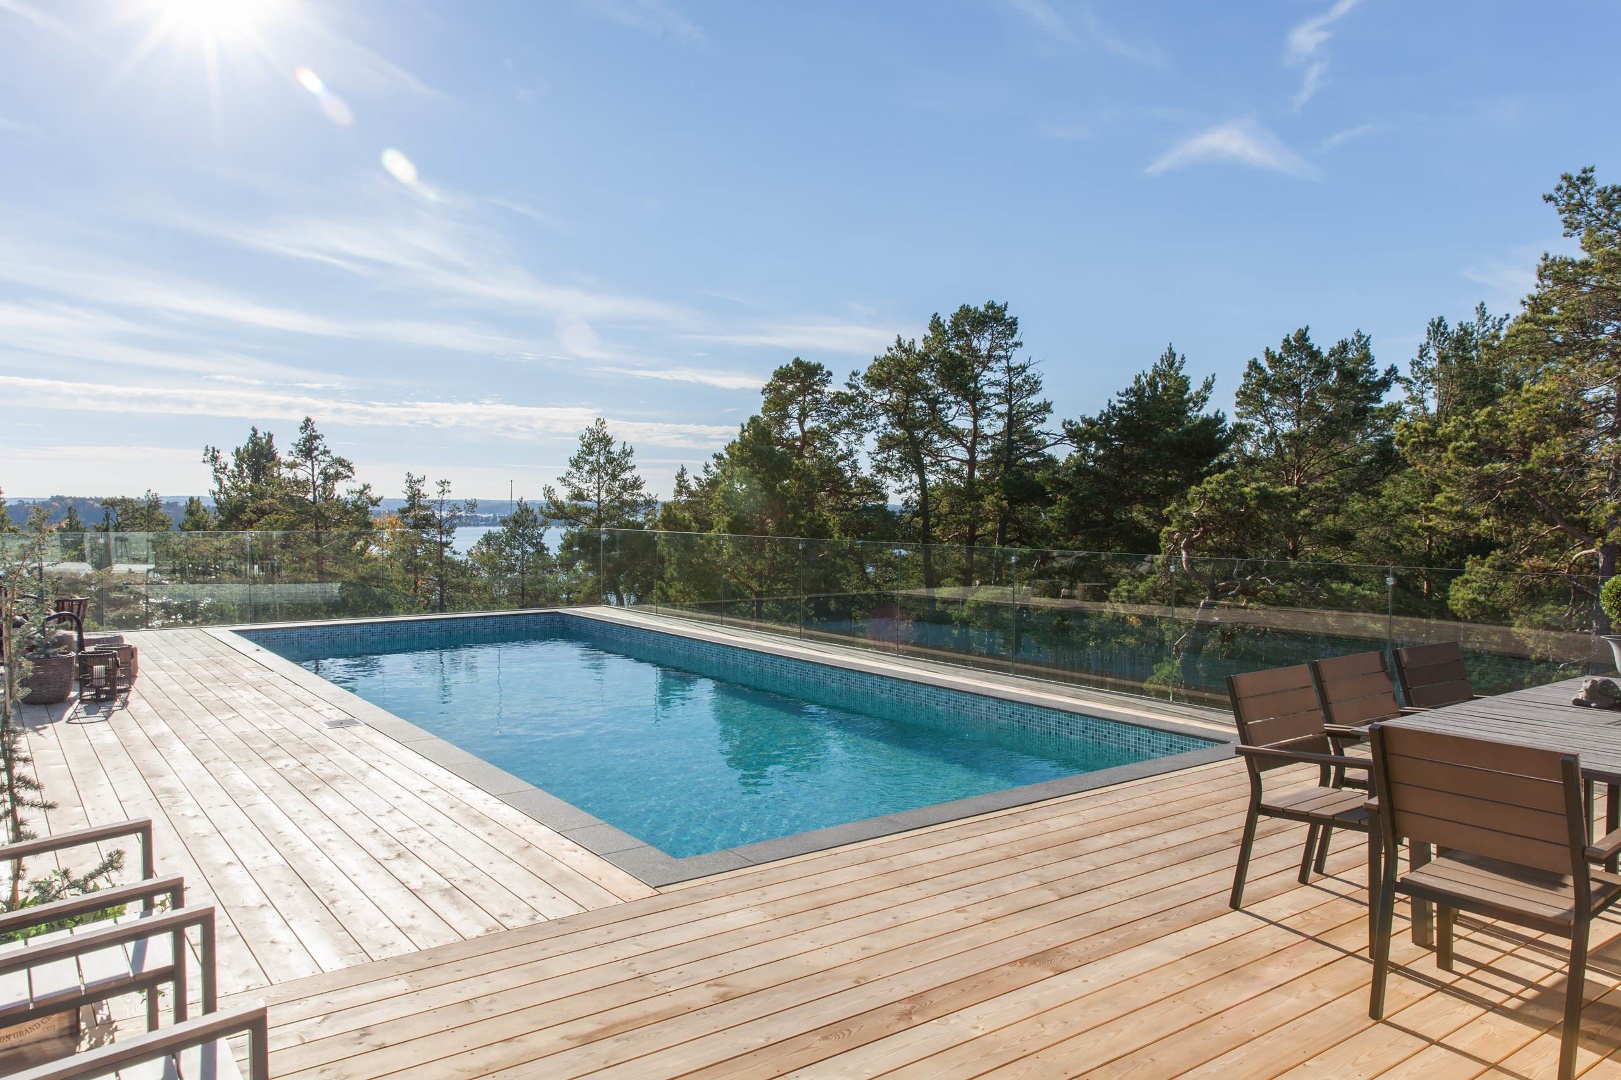 15 Phenomenal Scandinavian Swimming Pool Designs